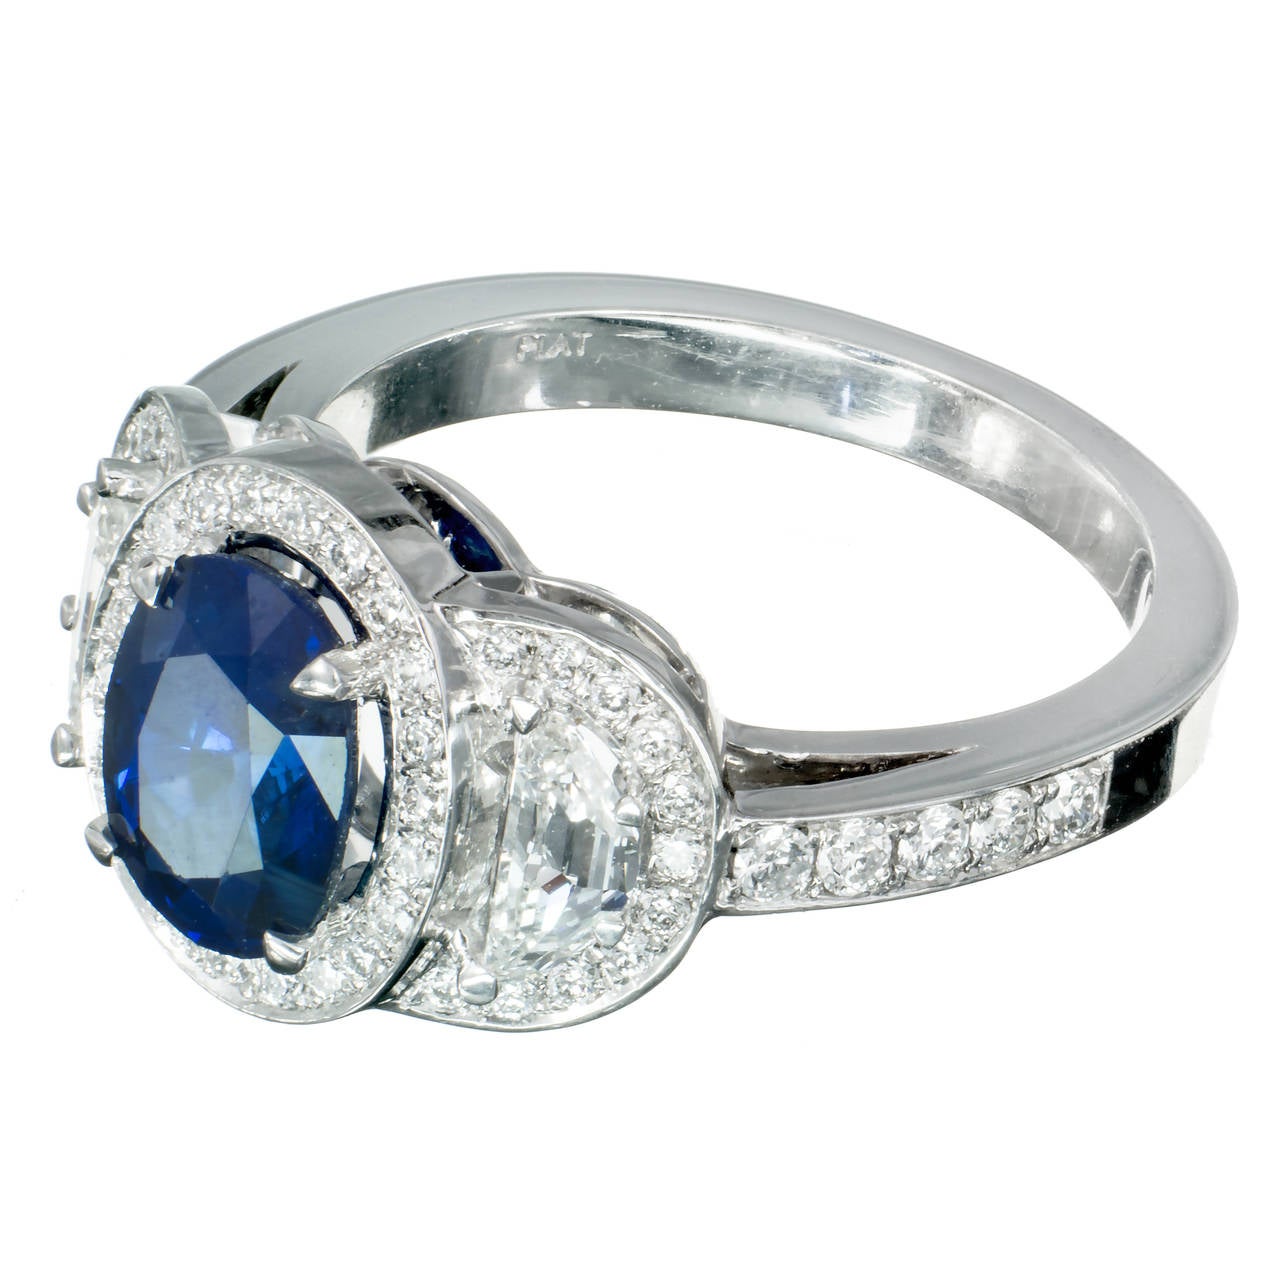 Saphir bleu ovale 1,89 ct, certifié GIA, corindon naturel simple chaleur. La bague a été conçue avec des diamants demi-lune taillés en escalier pour aller avec le magnifique saphir de la propriété dans une monture en platine à triple halo de Peter